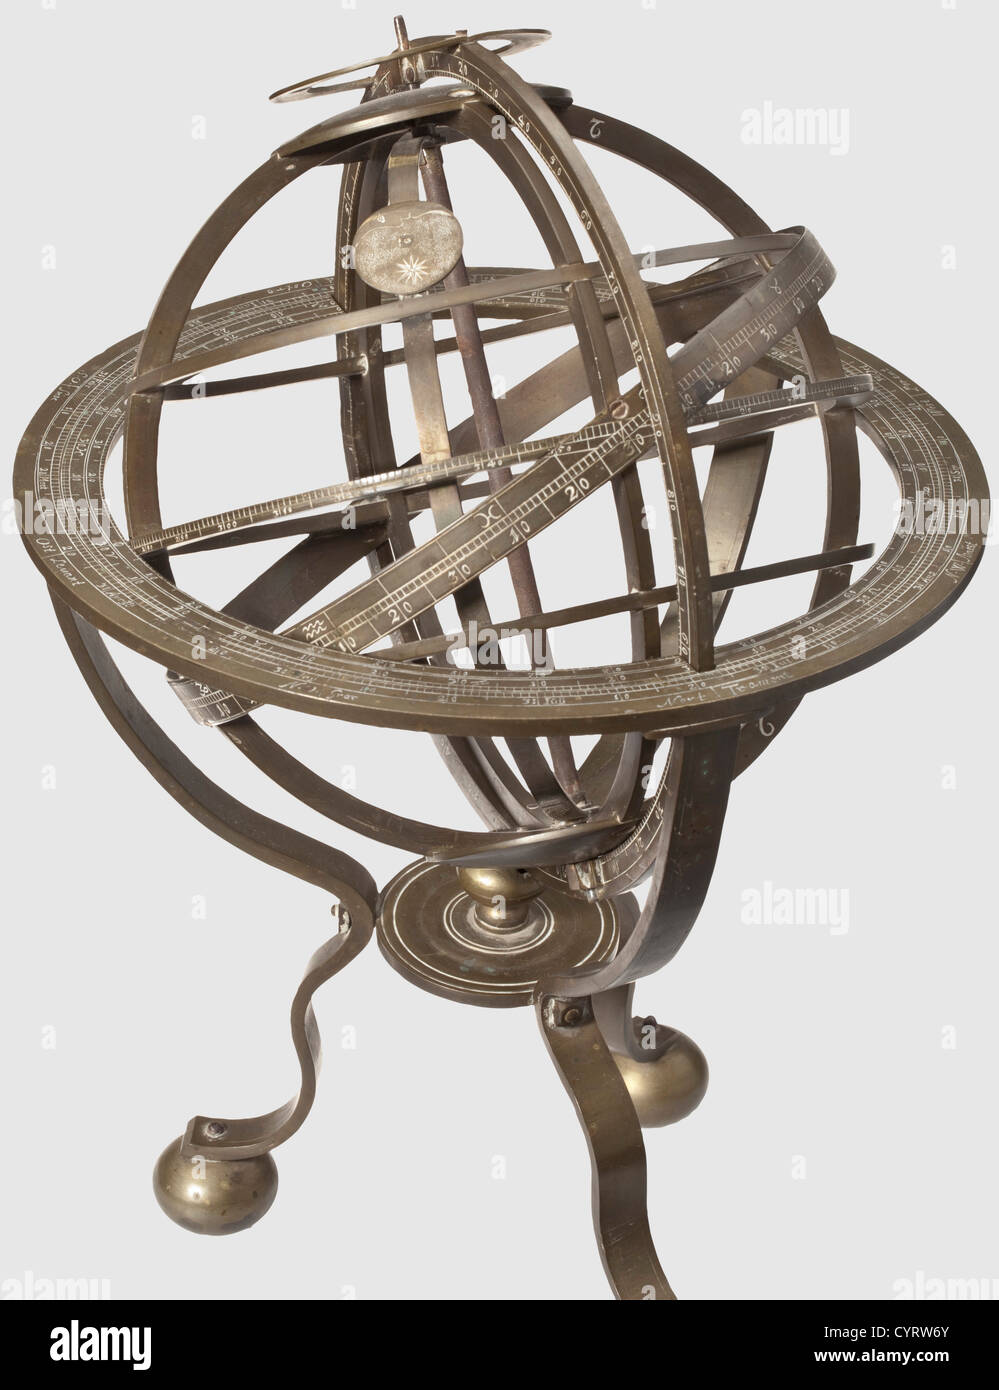 Una sfera armillare fiamminga con anello eclisciato, struttura interamente metallica del 18 ° secolo fatta di ottone con patina età scura.sfera con bande orizzontali continue all'equatore e ai tropici così come segni per il cerchio polare.la fascia equatore con 360 gradi finemente inciso scaling.Ecliptic ring con scala e segni astrologici.movibile clasp Con simbolo per la luna all'interno.treppiede sui piedini della sfera,l'anello di fissaggio con elaborato, scala multipla e le direzioni cardinali.parti numerate,viti con segni di punti.alcune piccole parti mancanti.,diritti aggiuntivi-distanze-non disponibili Foto Stock